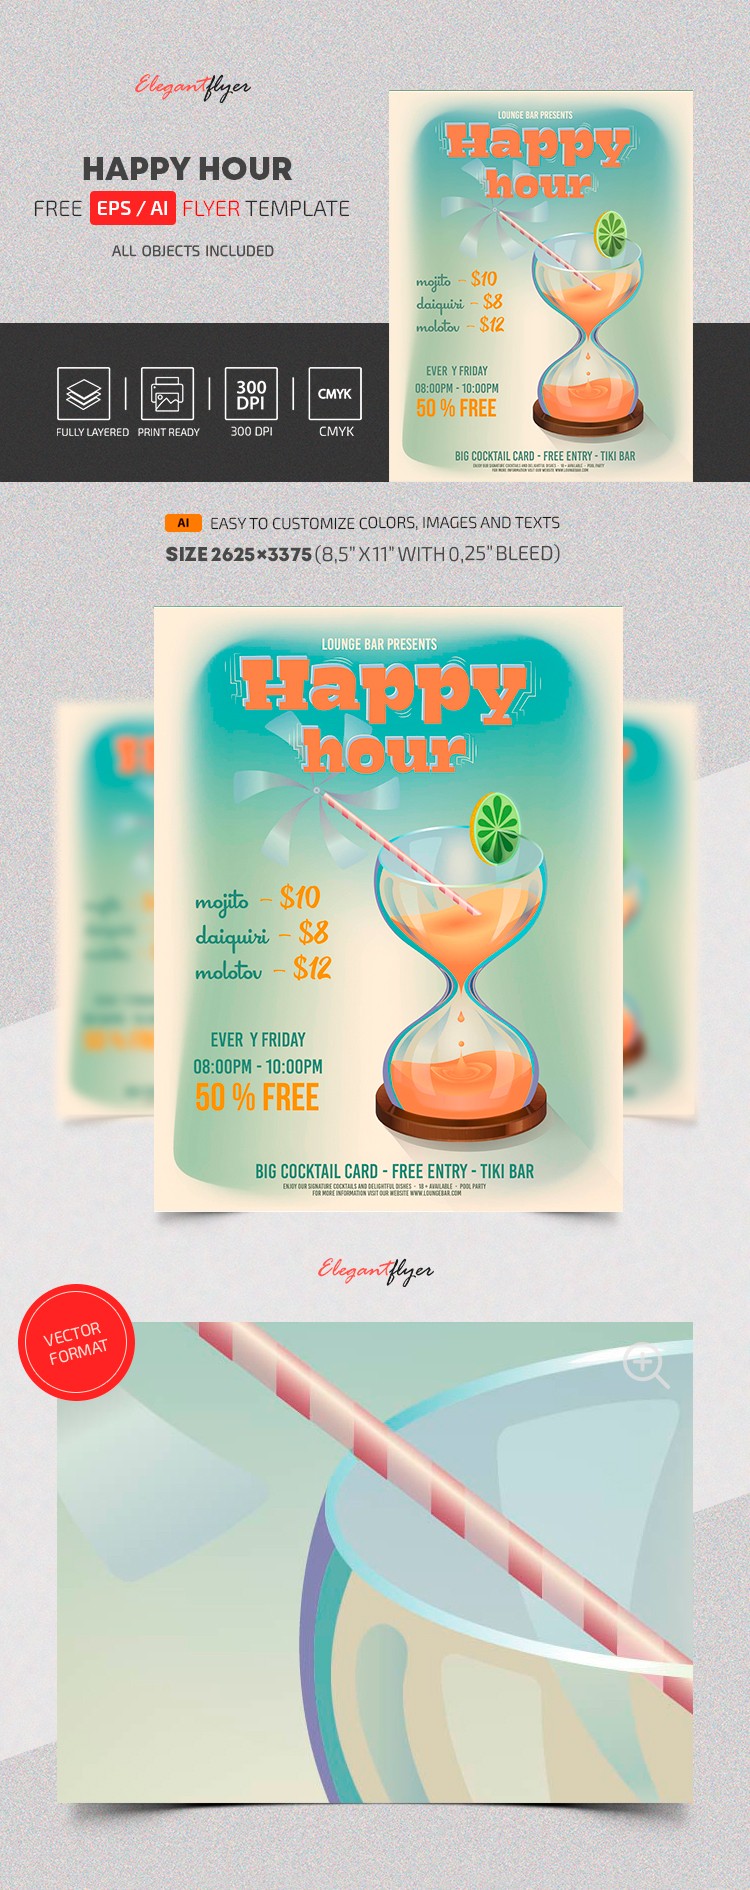 Happy Hour Vector Flyer by ElegantFlyer